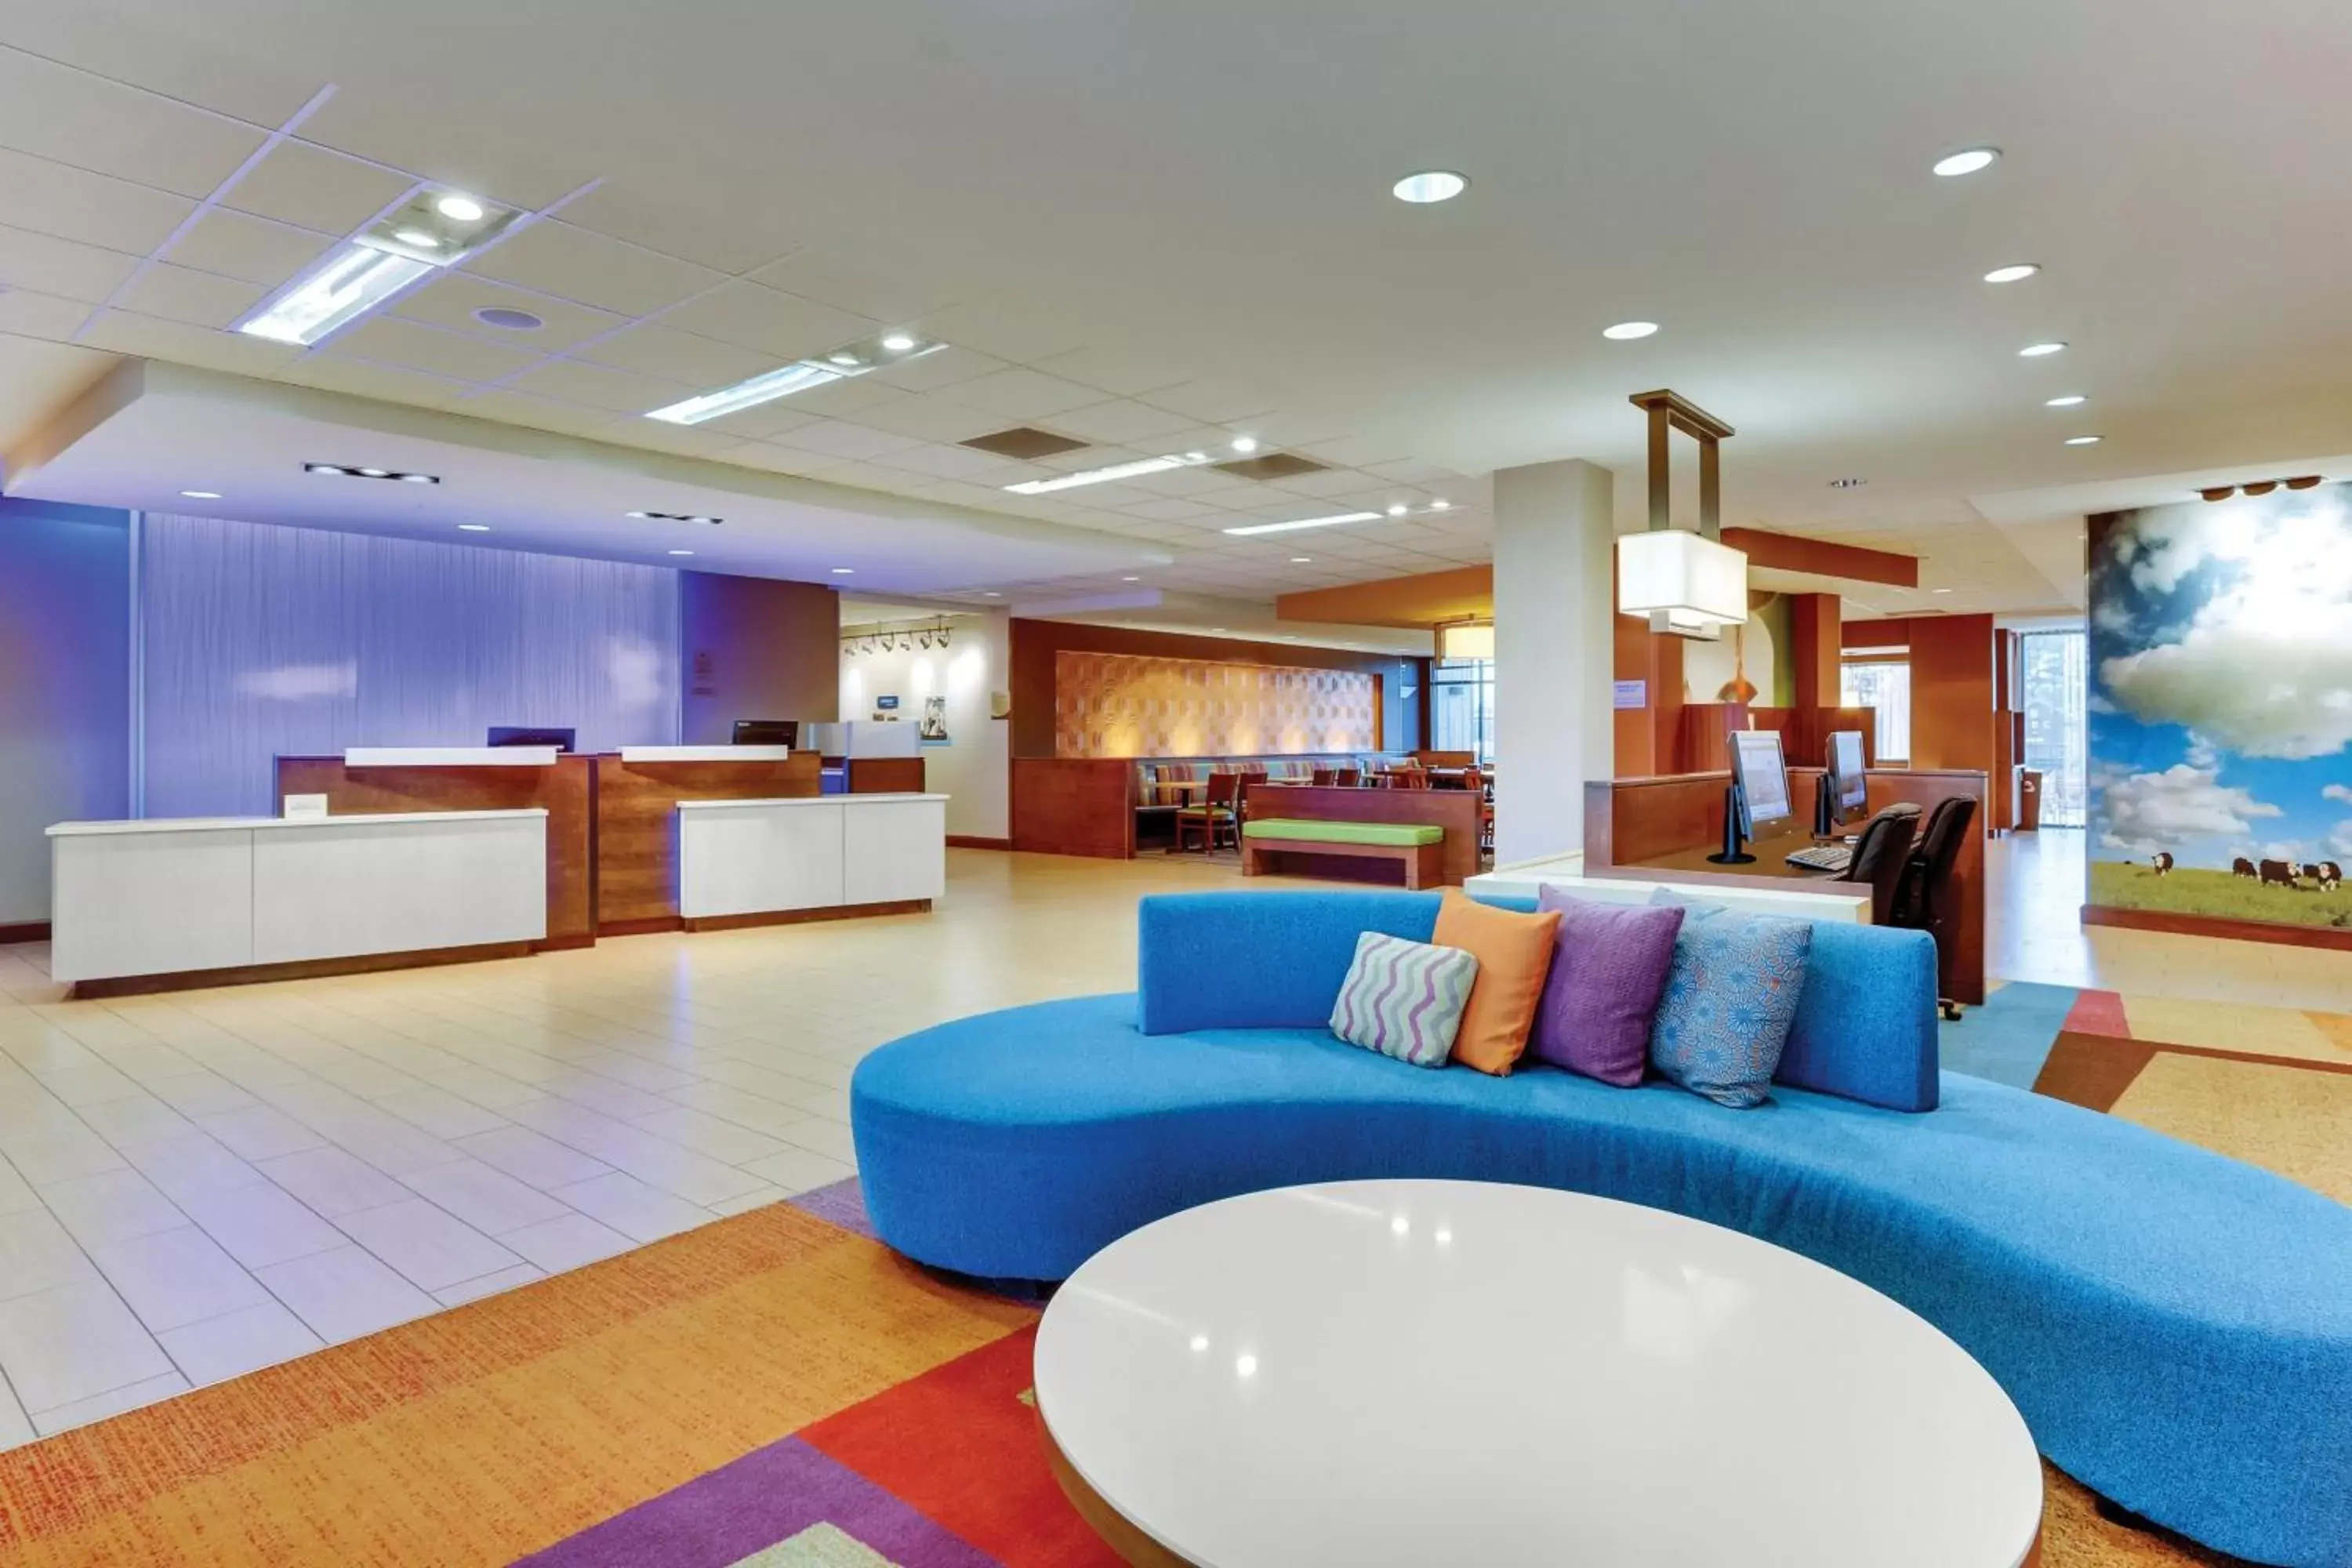 Lobby or reception in Fairfield Inn & Suites by Marriott Dunn I-95